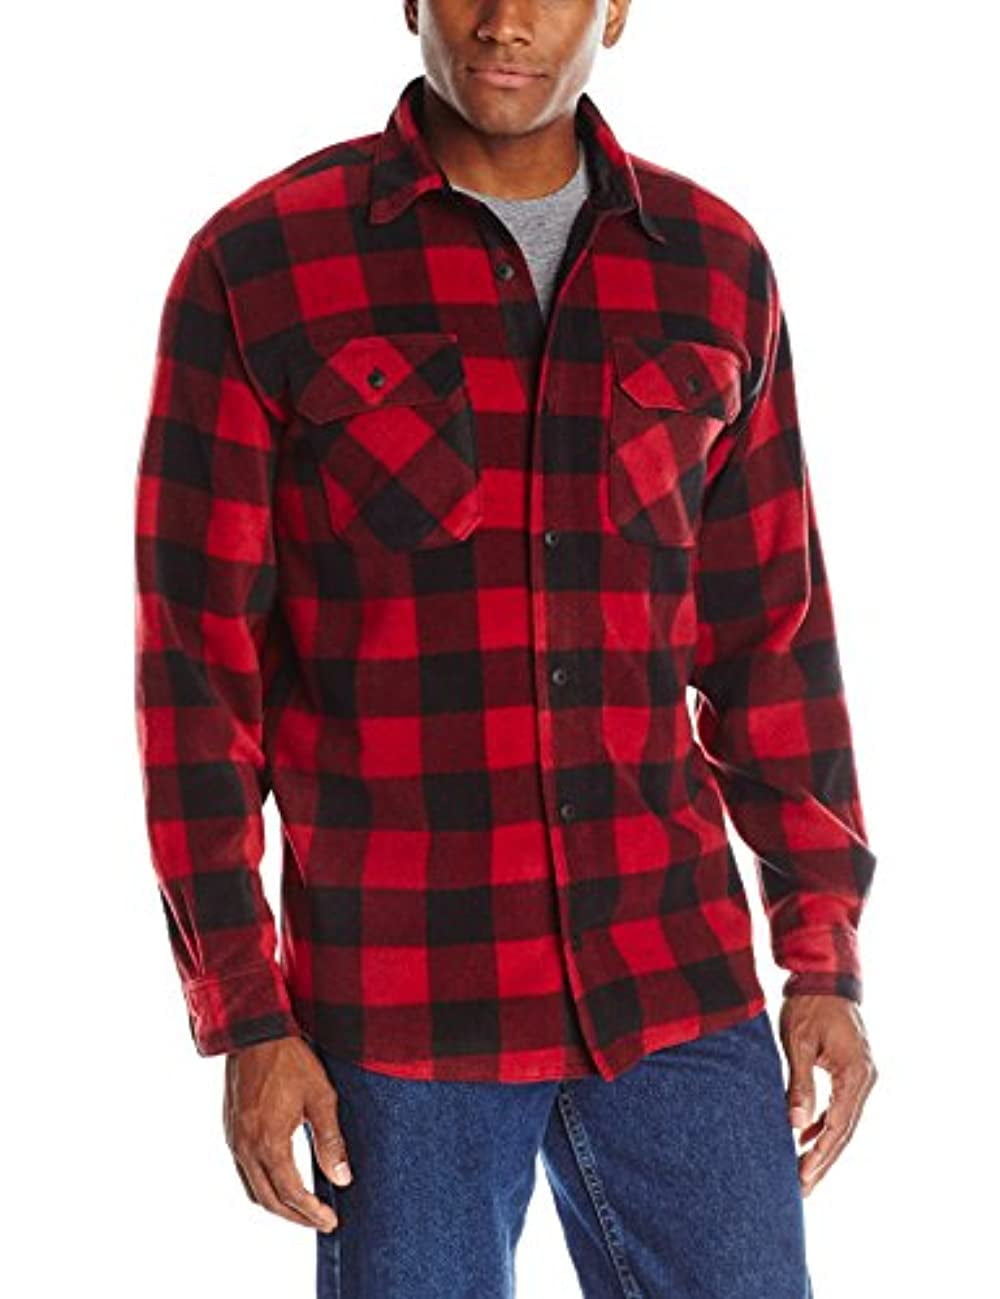 Wrangler Authentics s Long Sleeve Plaid Shirt Red Medium - Walmart.com